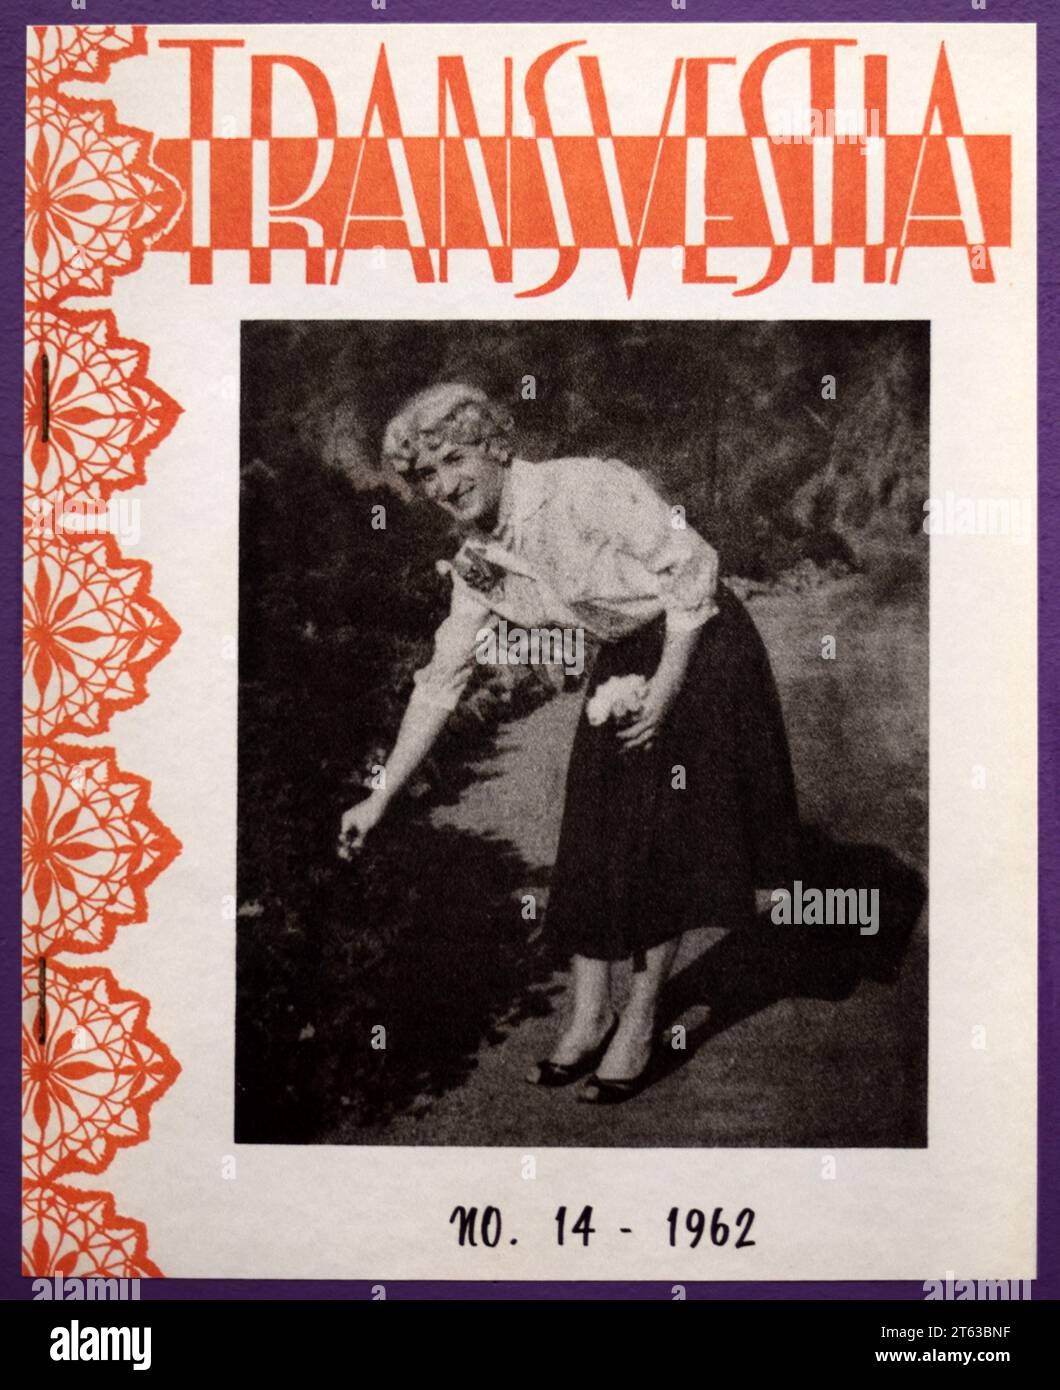 Couverture de Transvestia Magazine publié pendant quelques années au début des années 1960 pour travesties et Cross dresser Banque D'Images